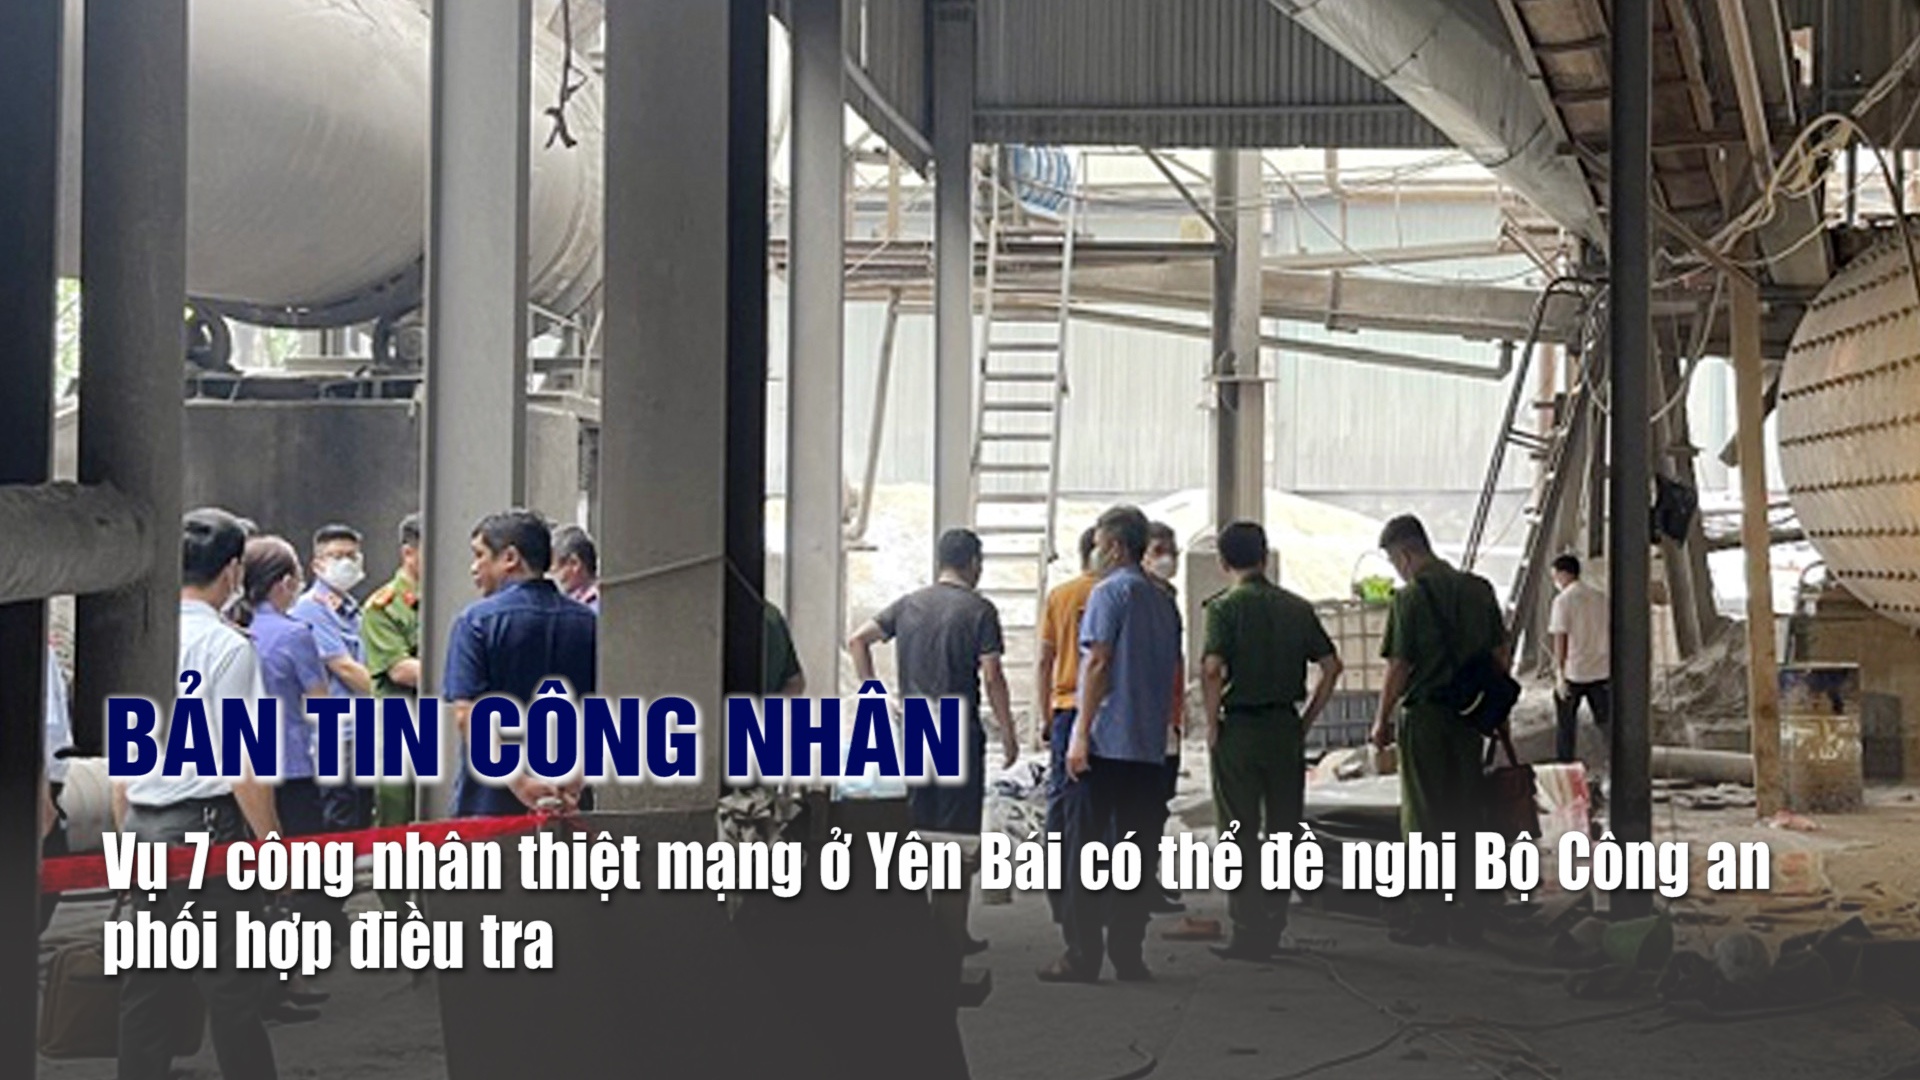 Bản tin công nhân: Vụ 7 công nhân thiệt mạng ở Yên Bái có thể đề nghị Bộ Công an phối hợp điều tra